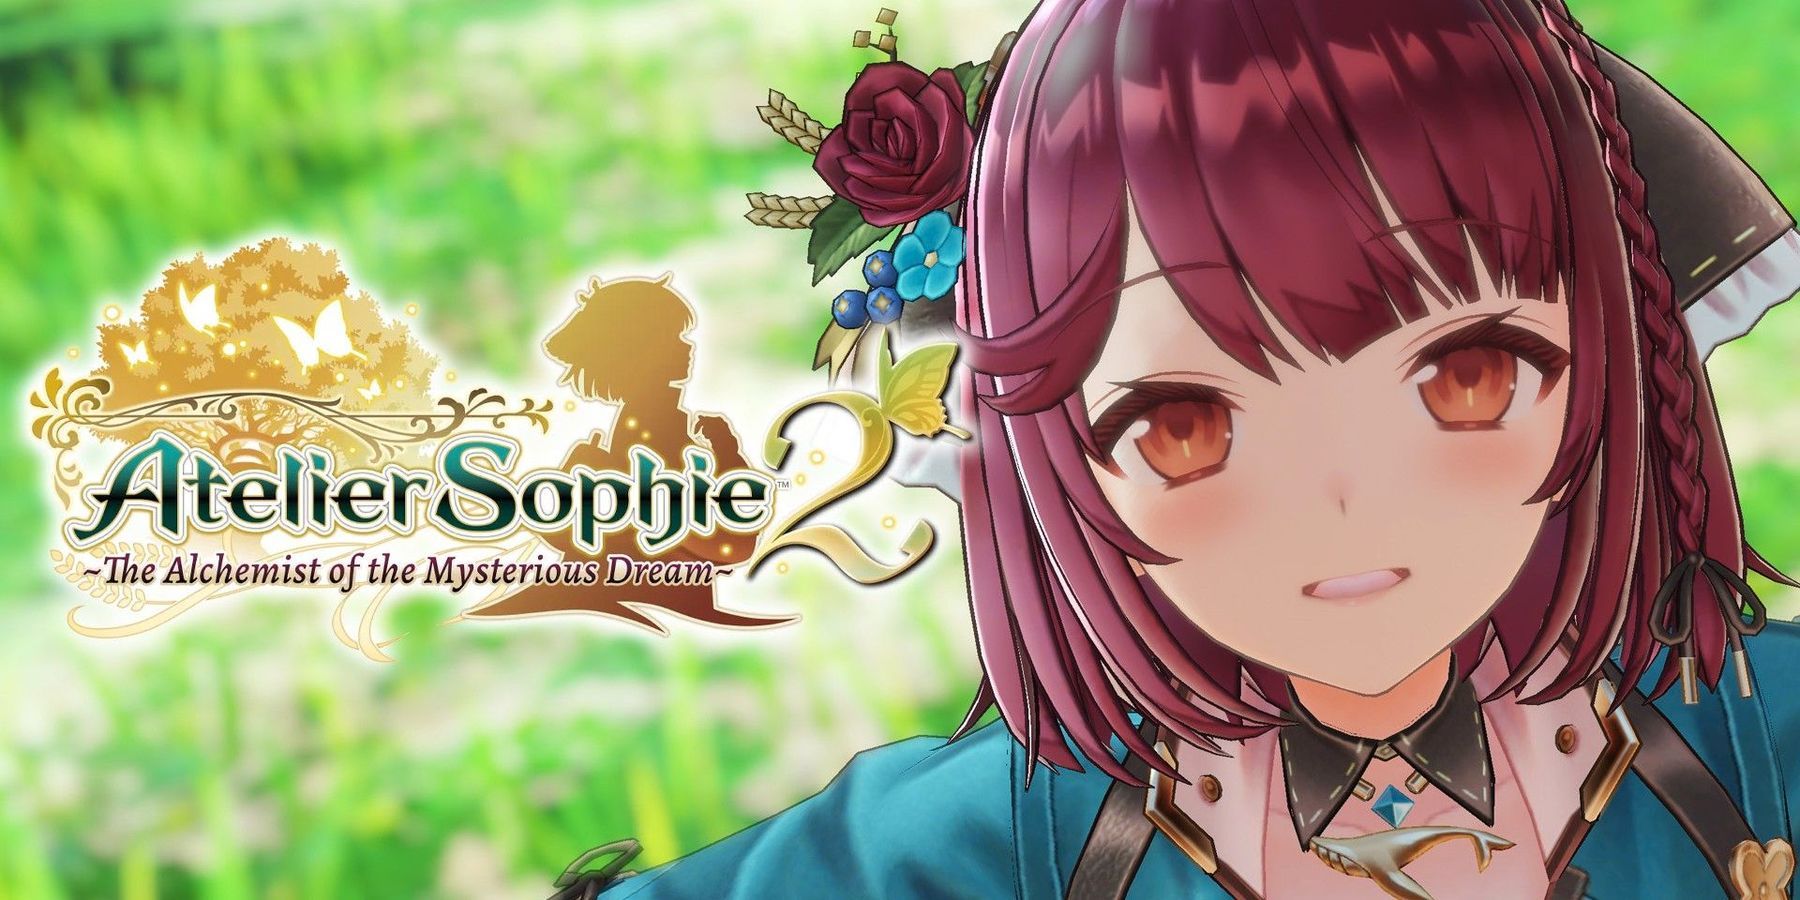 Atelier Sophie 2 offisielt kunngjort av Koei Tecmo med utgivelse i februar 2022